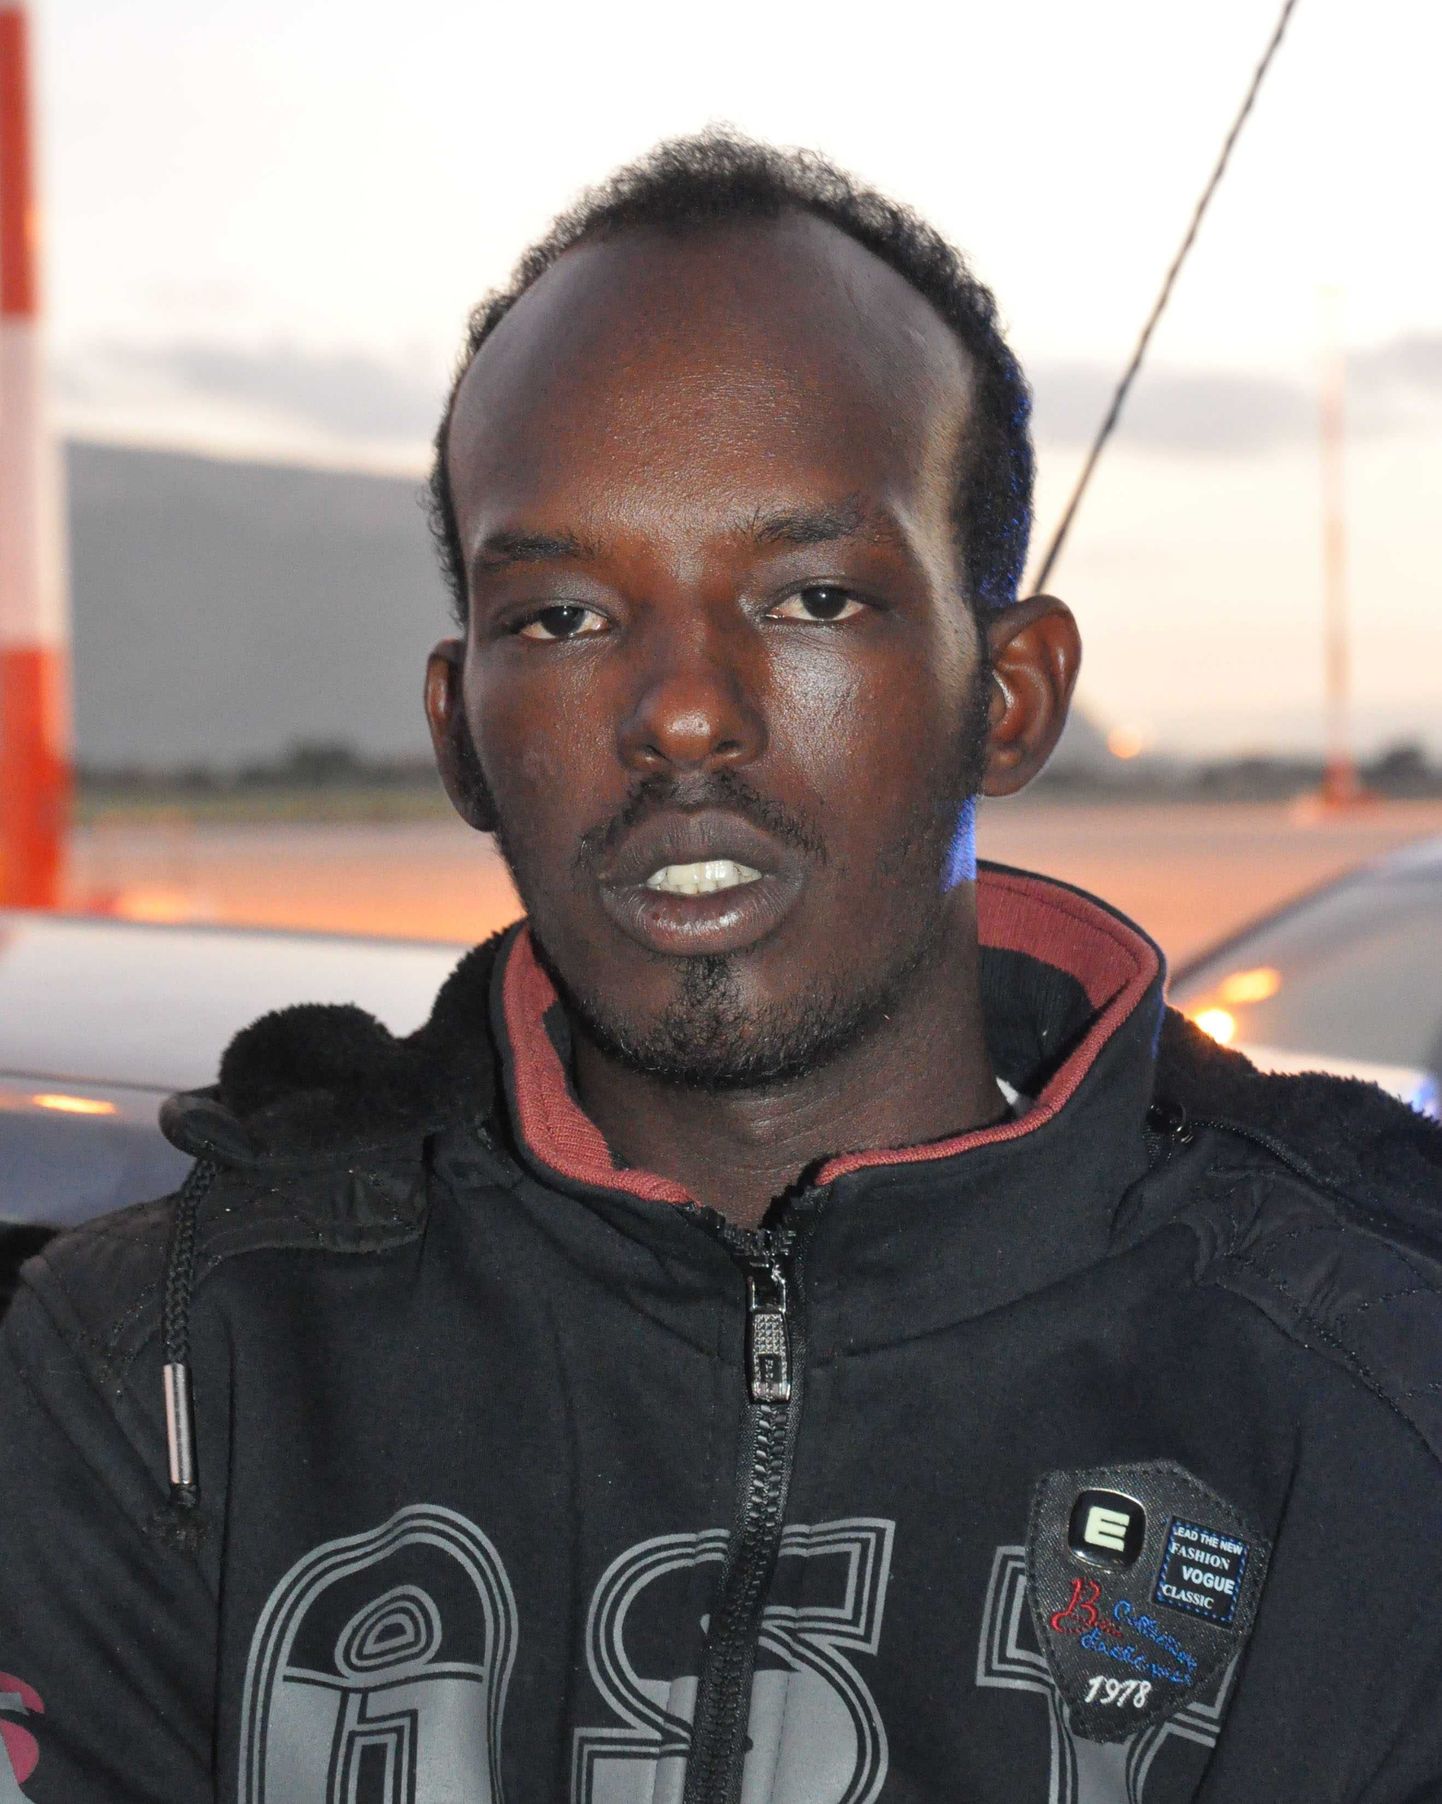 Inimröövides, vägistamistes, inimkaubitsemises ja ebaseaduslikule migratsioonile kaasaaitamises süüdistatuna vahistatud somaallane Mouhamud Elmi Muhidin.